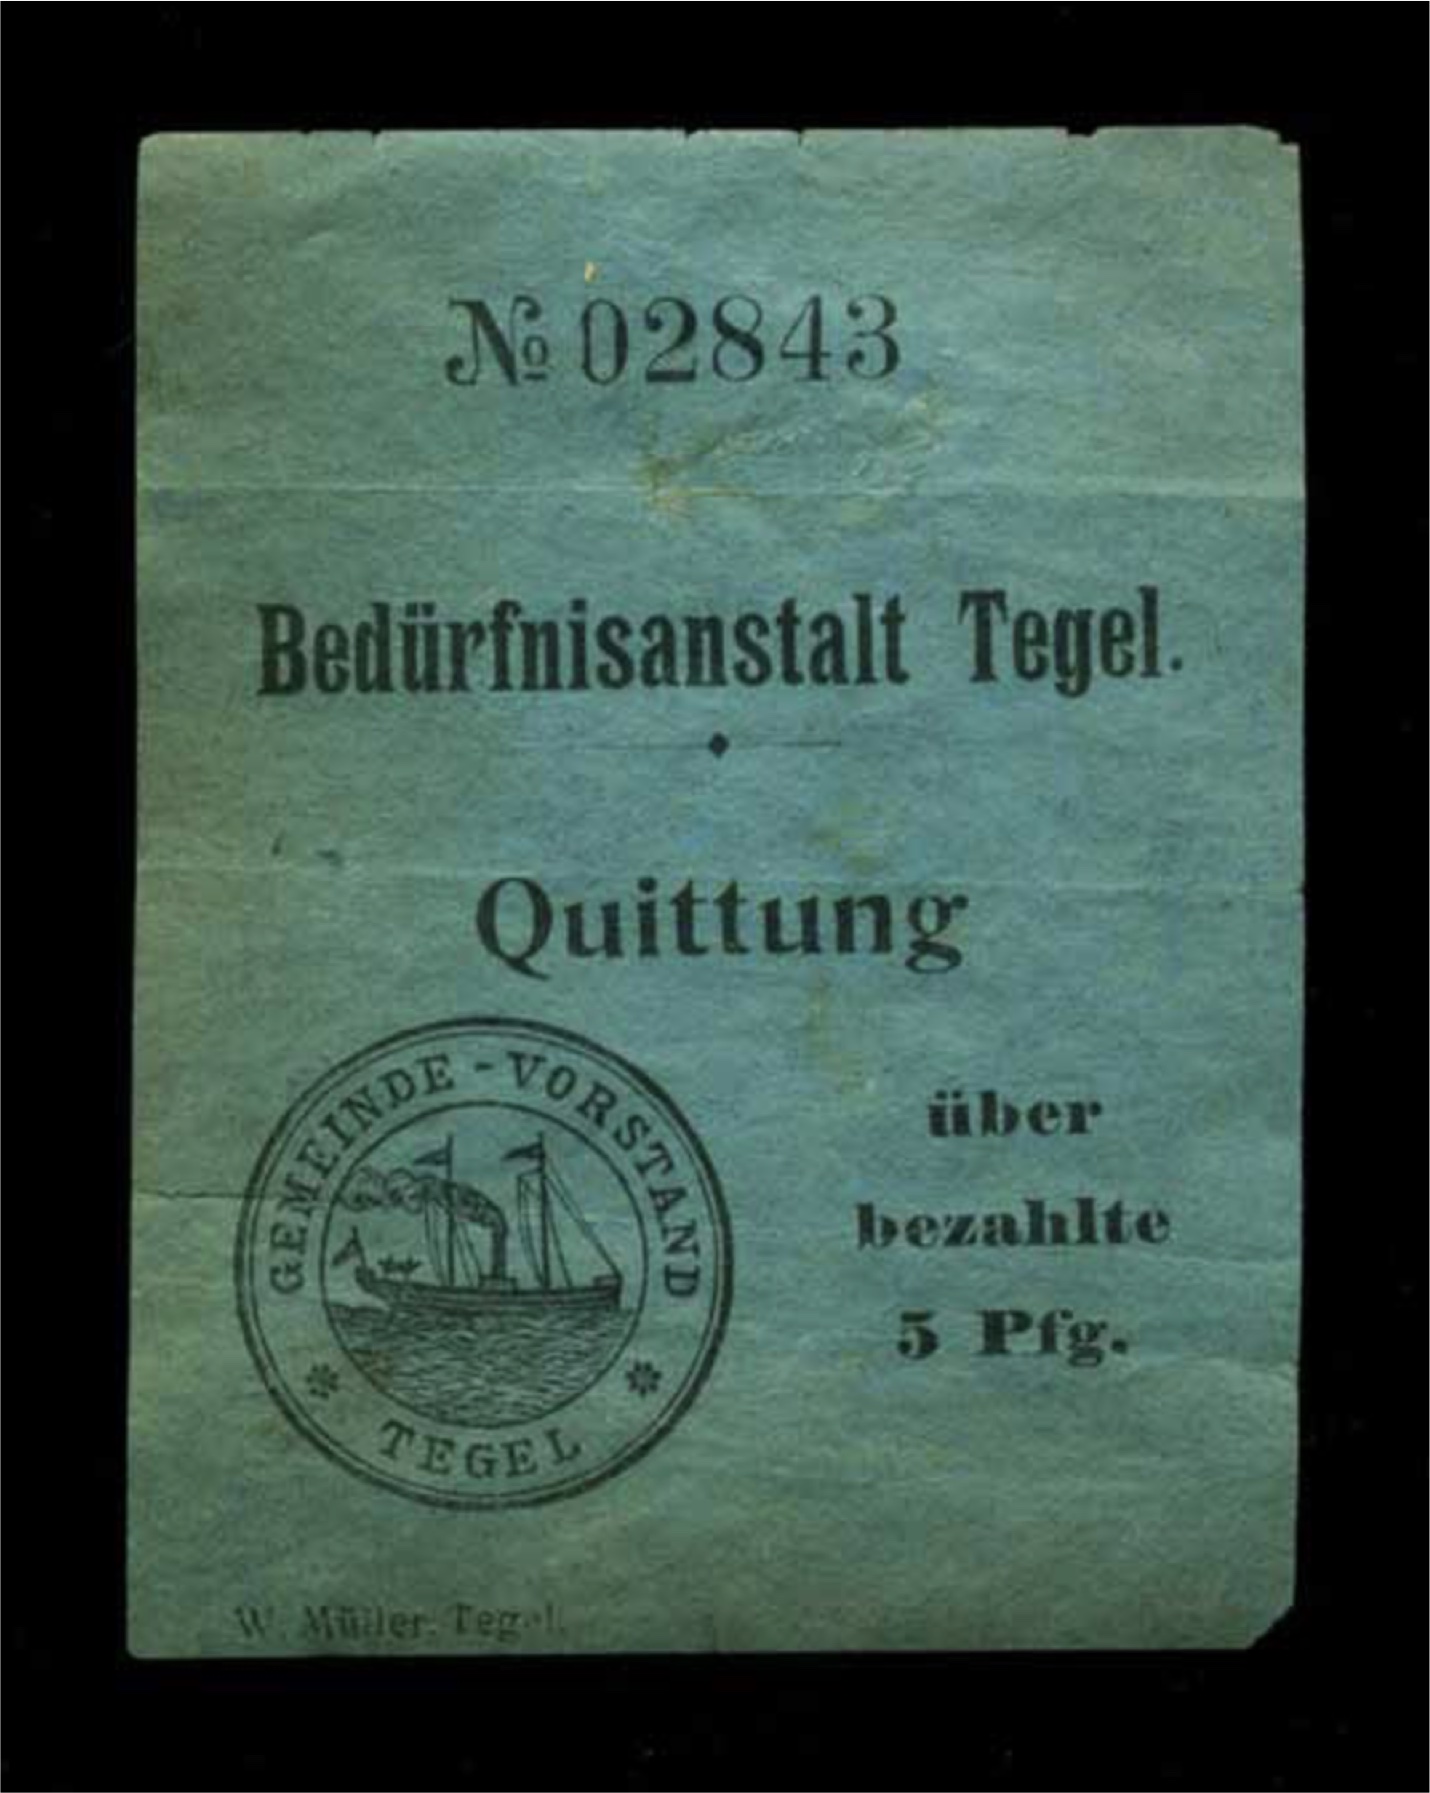 Bedürfnisanstalt Tegel, Quittung über bezahlte 5 Pfg. - 1907 / 700 Jahre Tegel